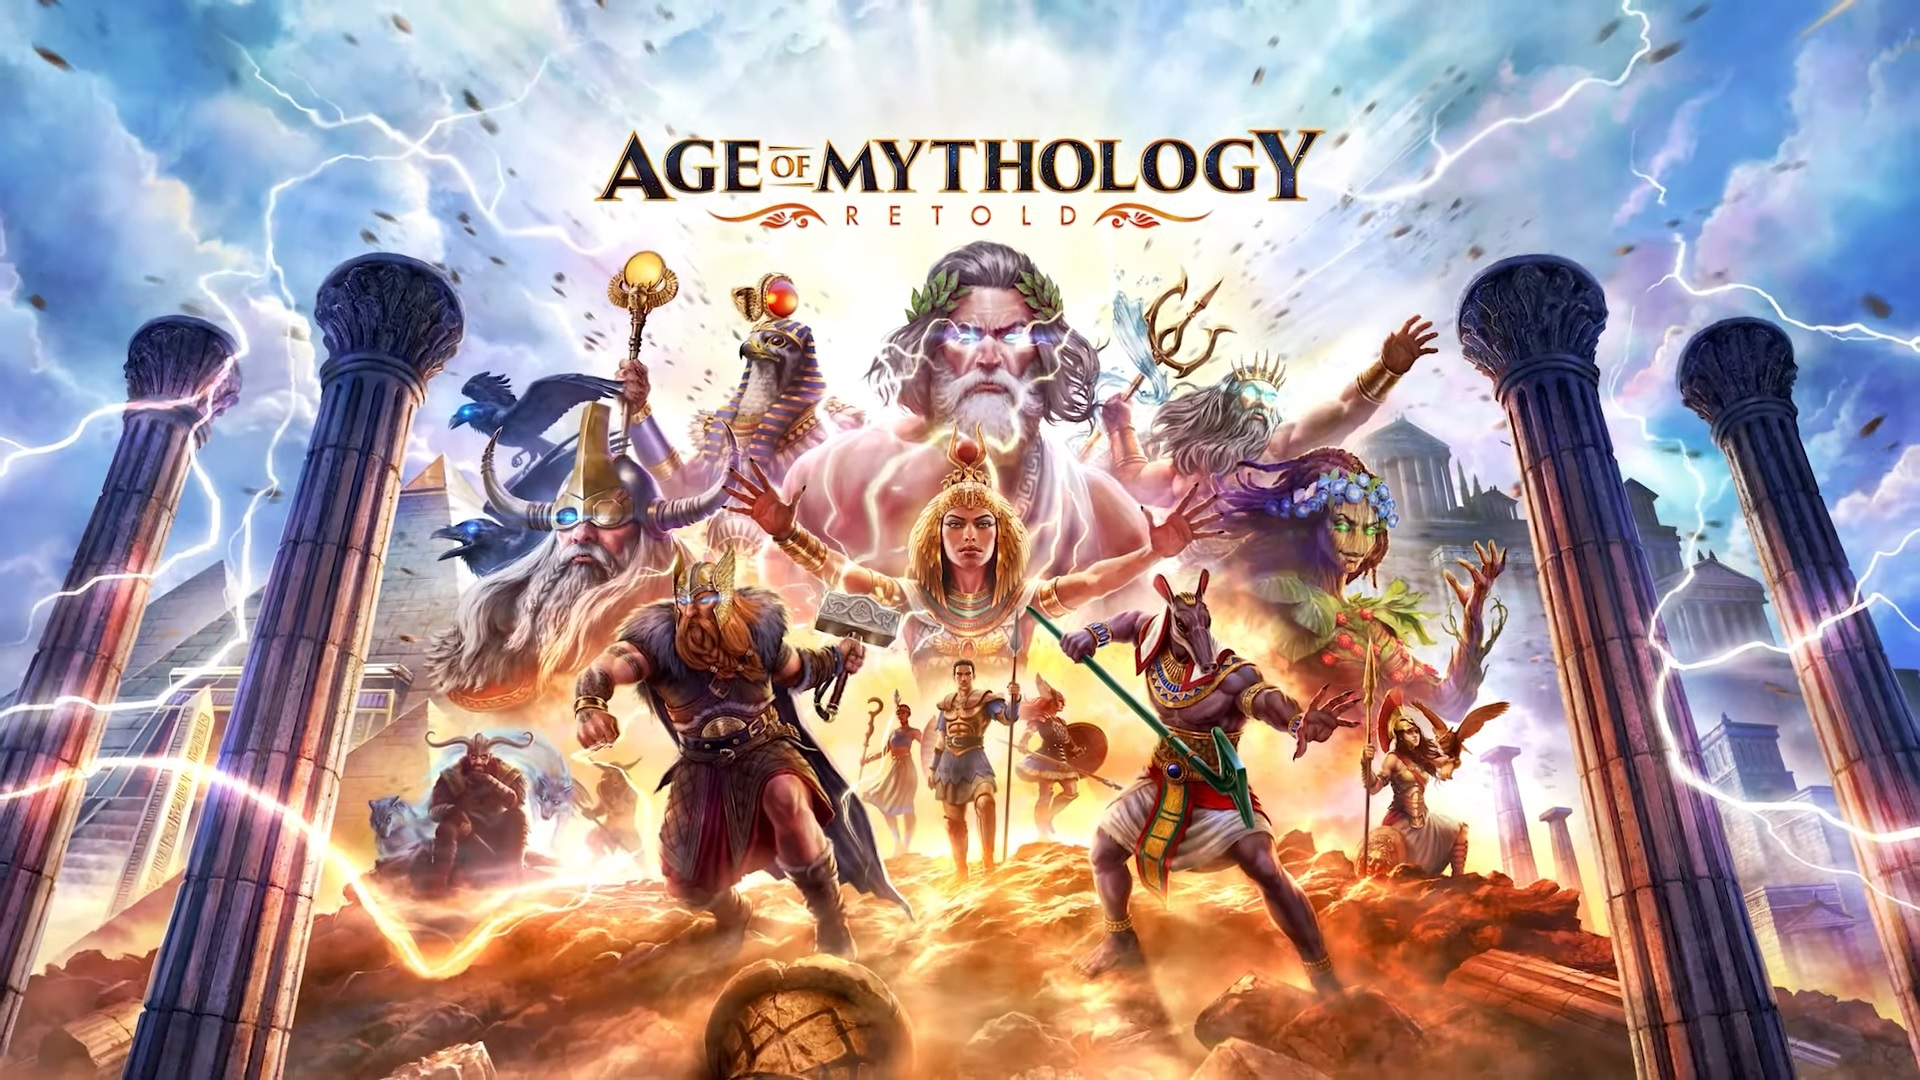   ,   ,    : ,     Age of Mythology: Retold